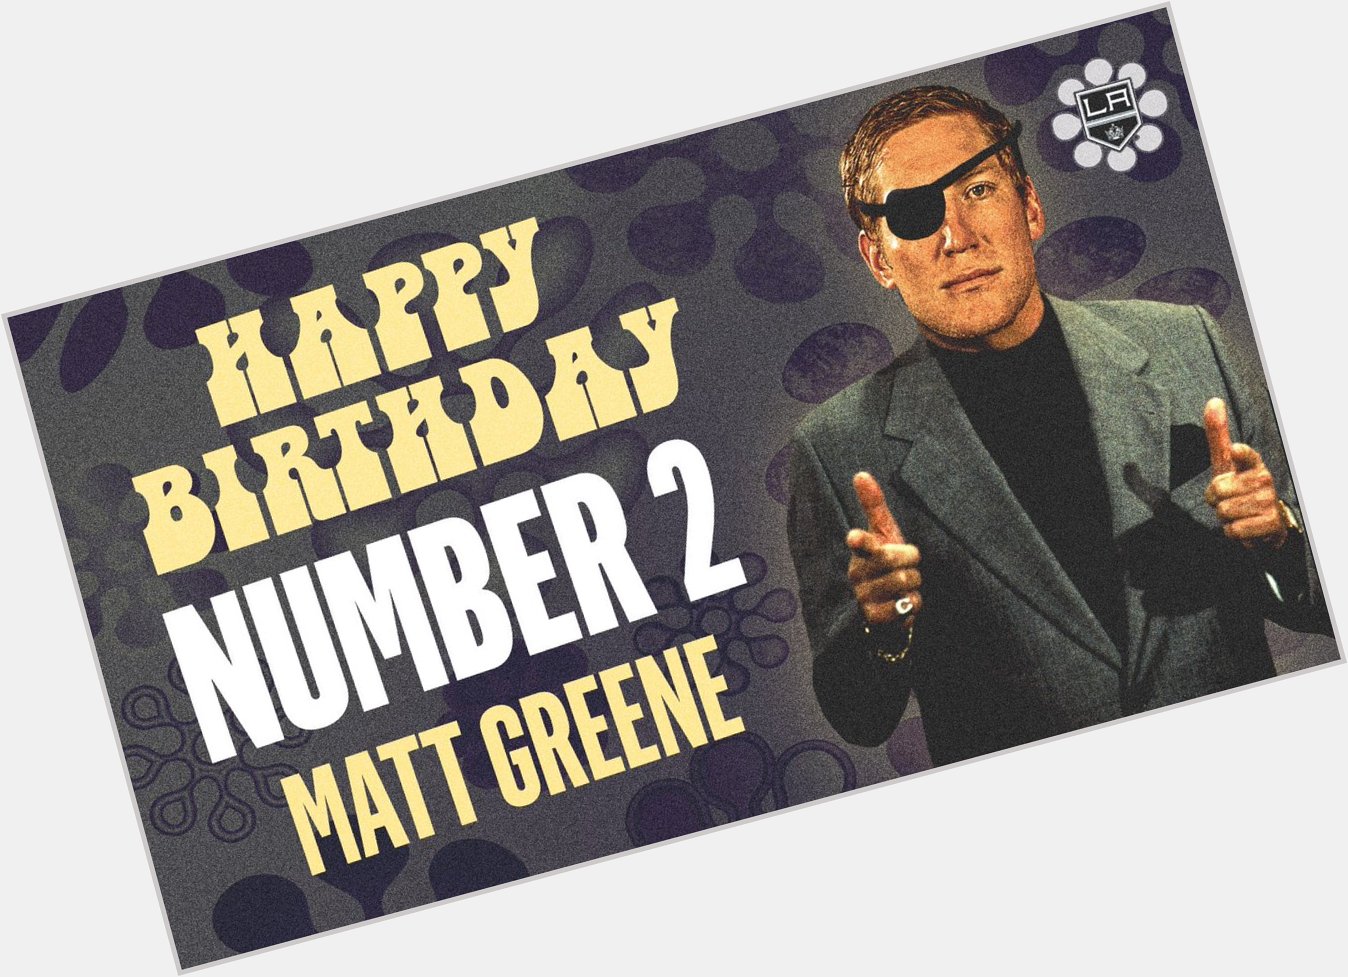 Happy birthday, Matt Greene! 